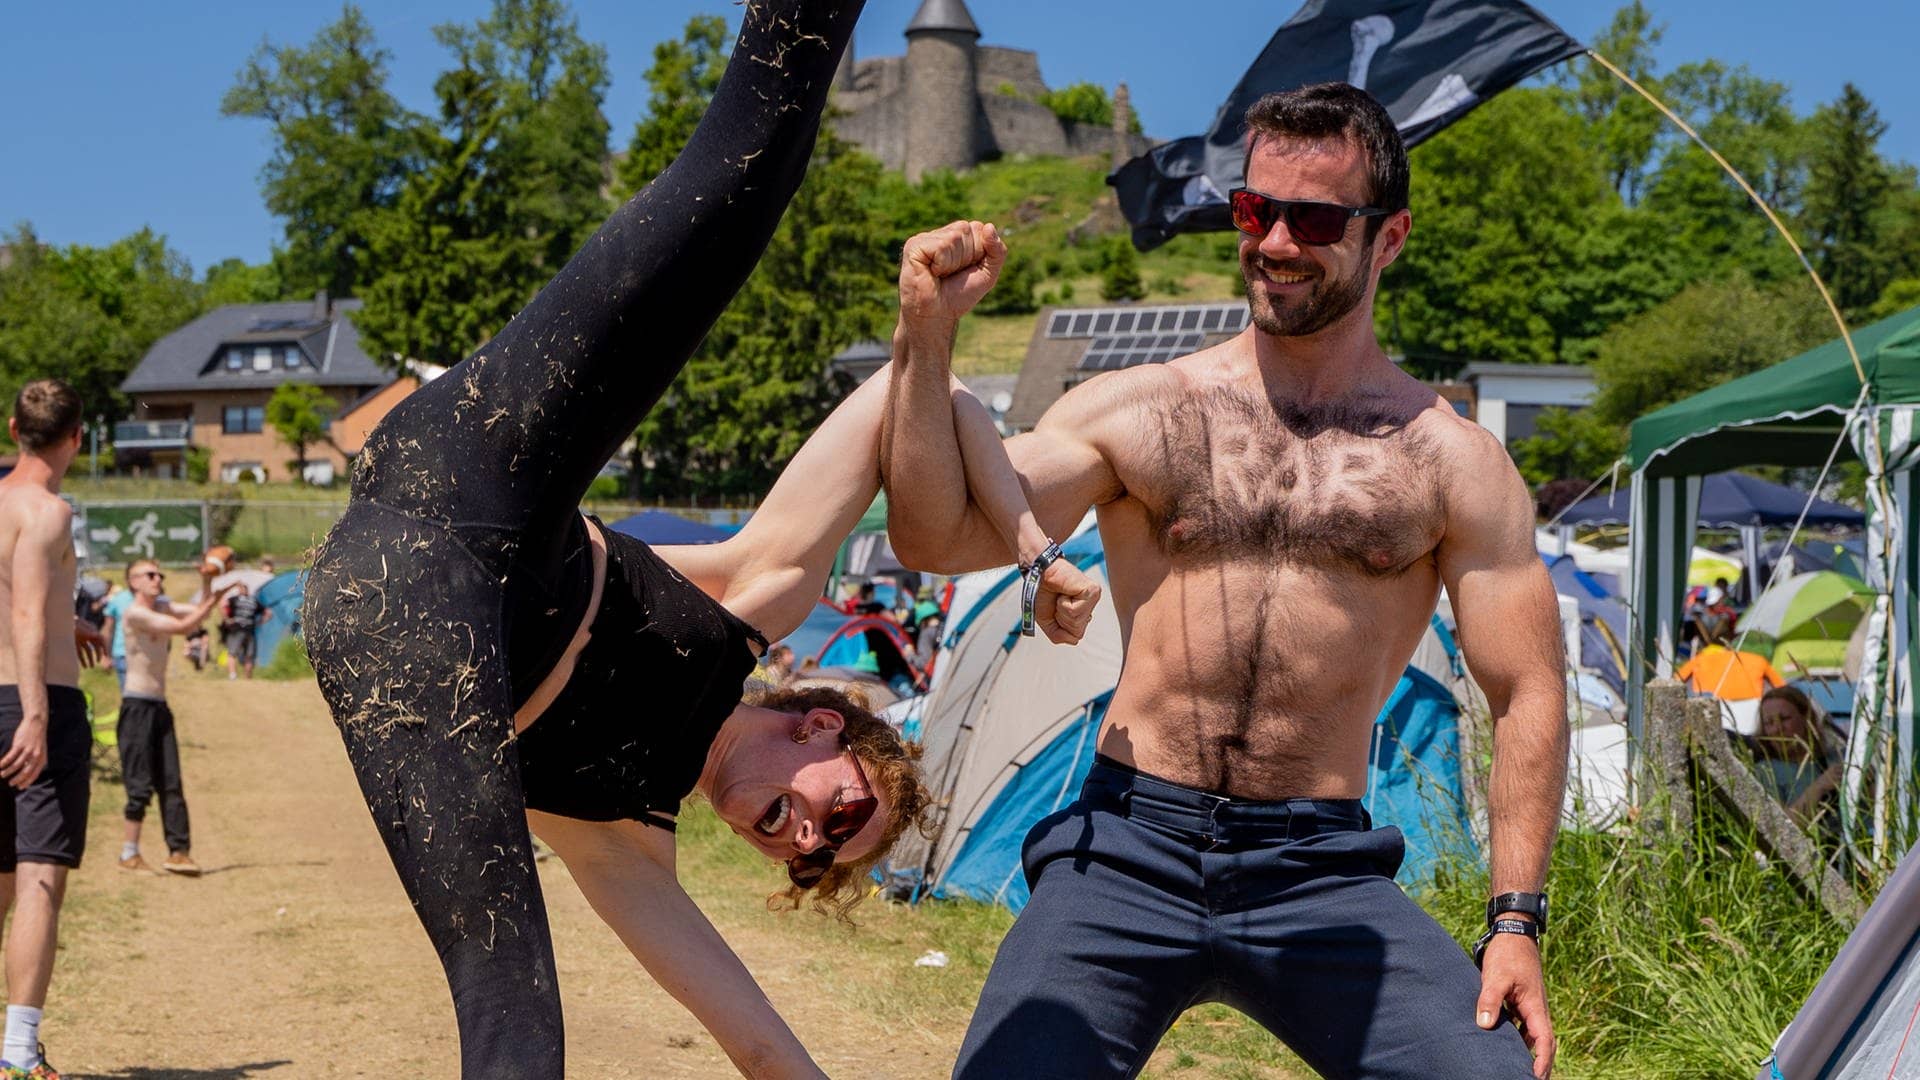 Zwei Campingplatz-Bewohner bei Rock am Ring machen eine Pose aus dem Bereich Acro-Yoga (Foto: SWR3, SWR3 / Ronny Krautz)